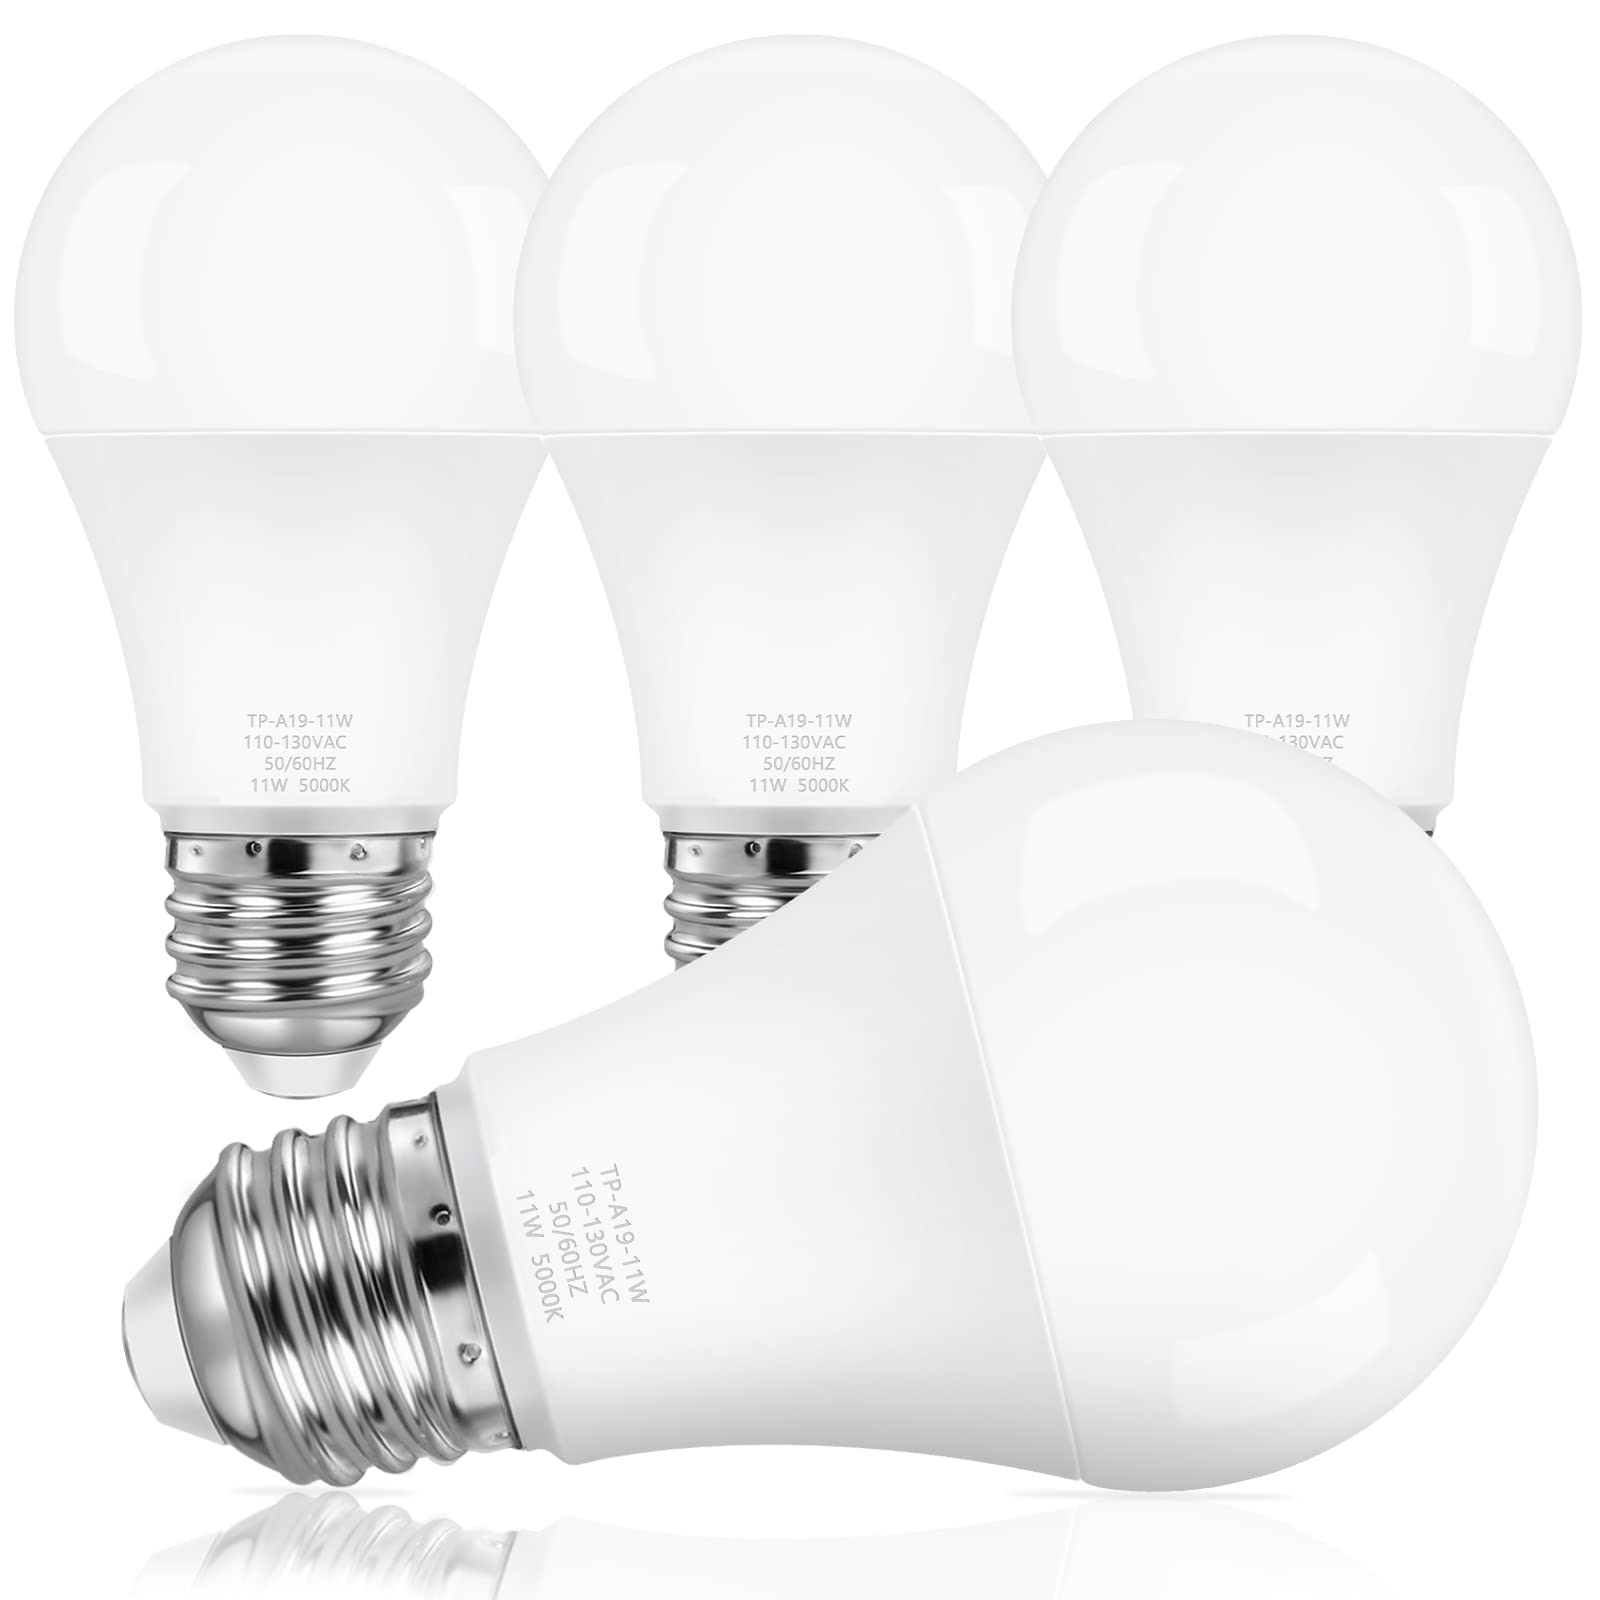 ASOMST LED Light Bulbs